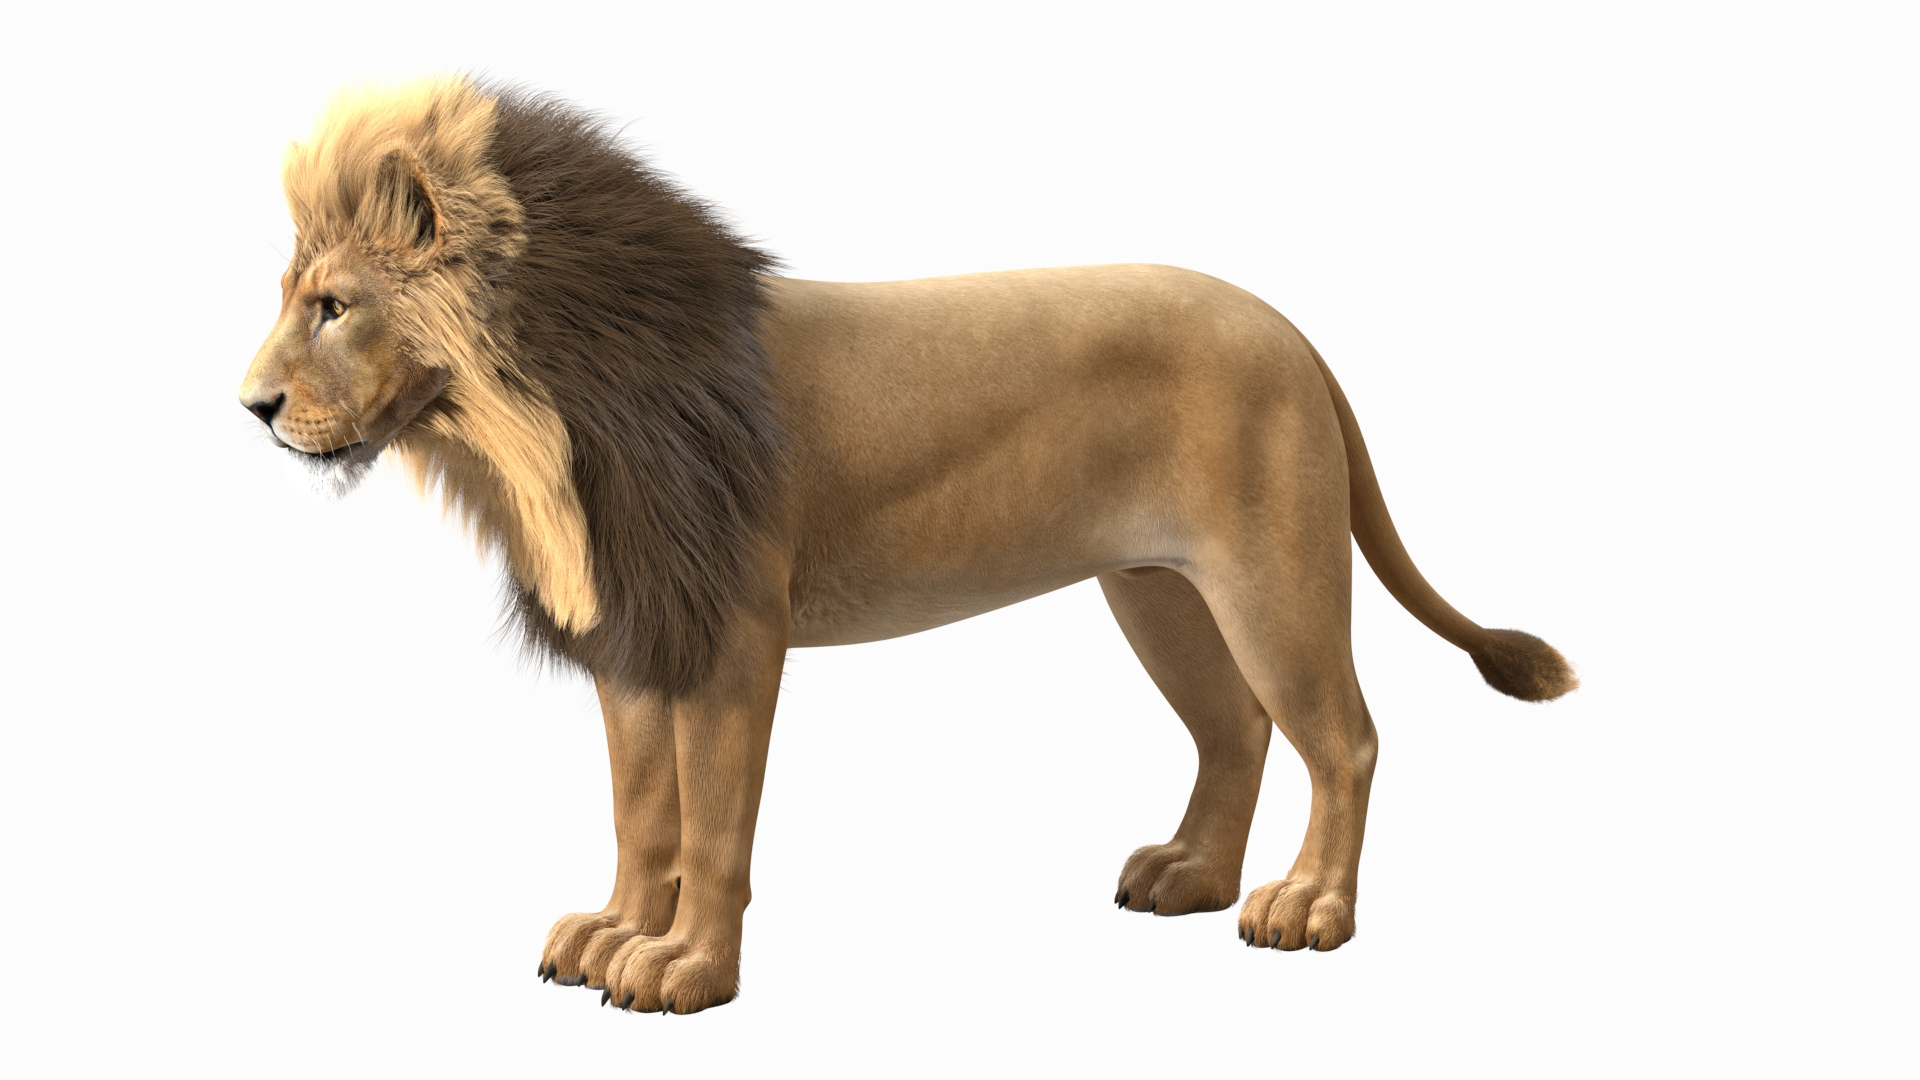 Male Lion Fur 3D Model - TurboSquid 1755995